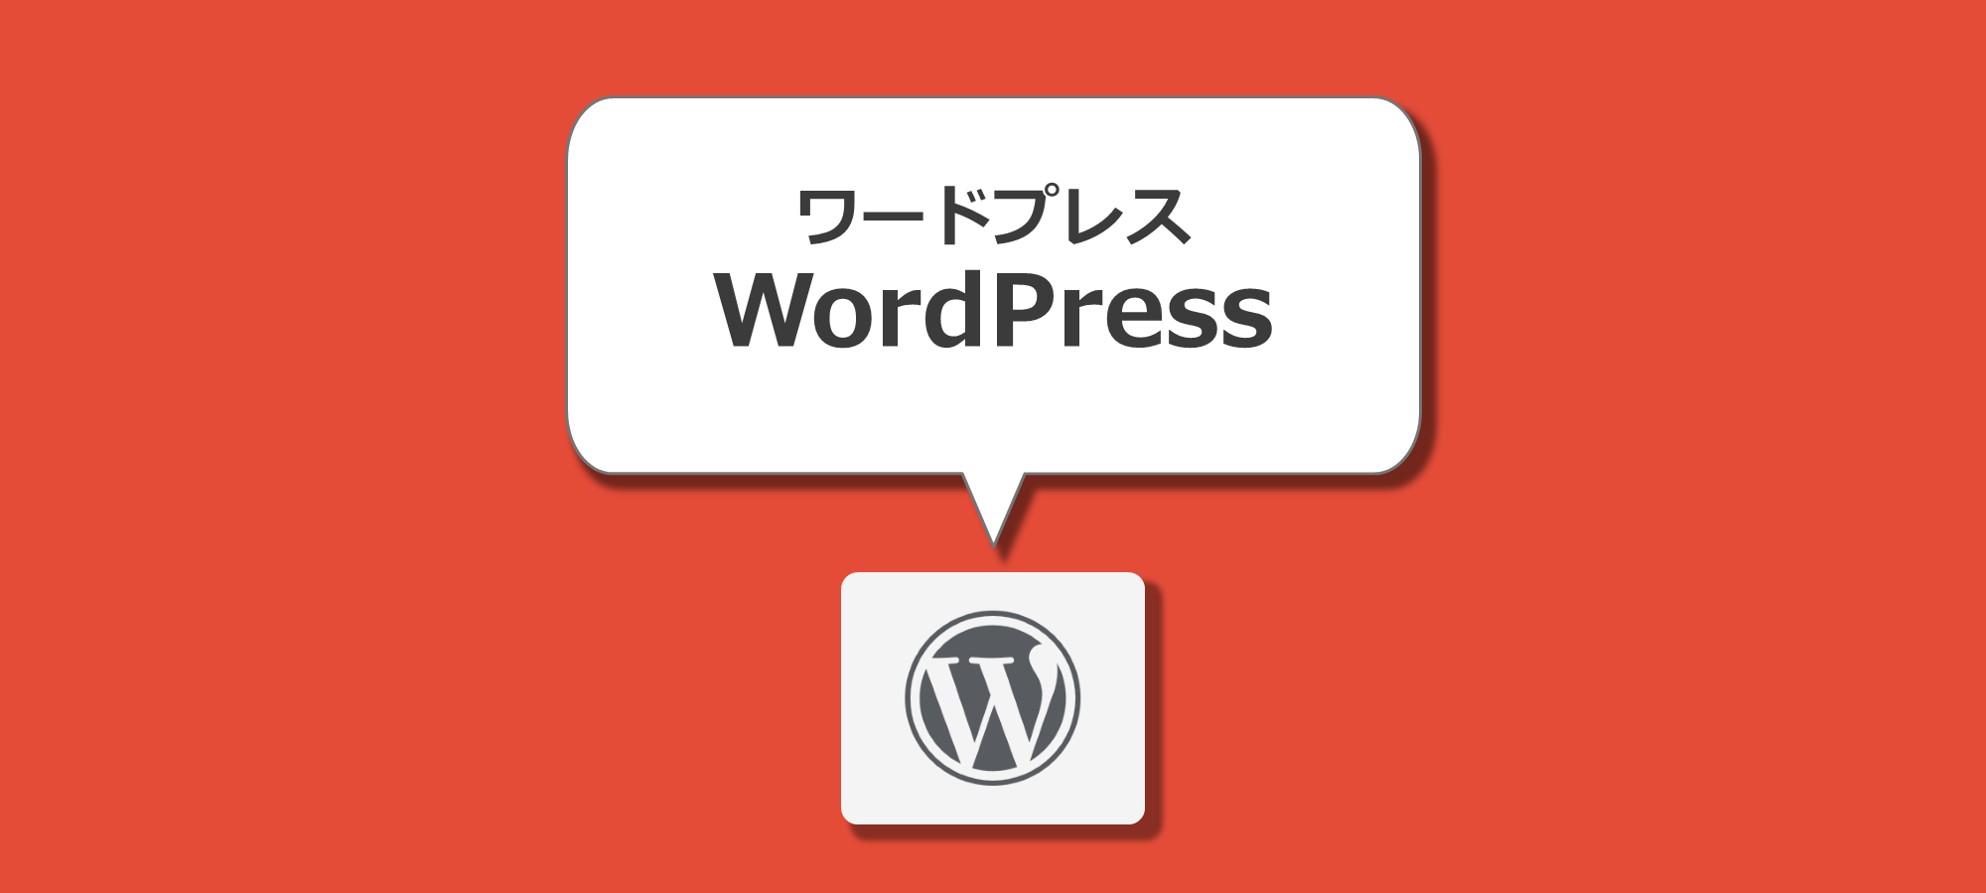 WordPress ワードプレス